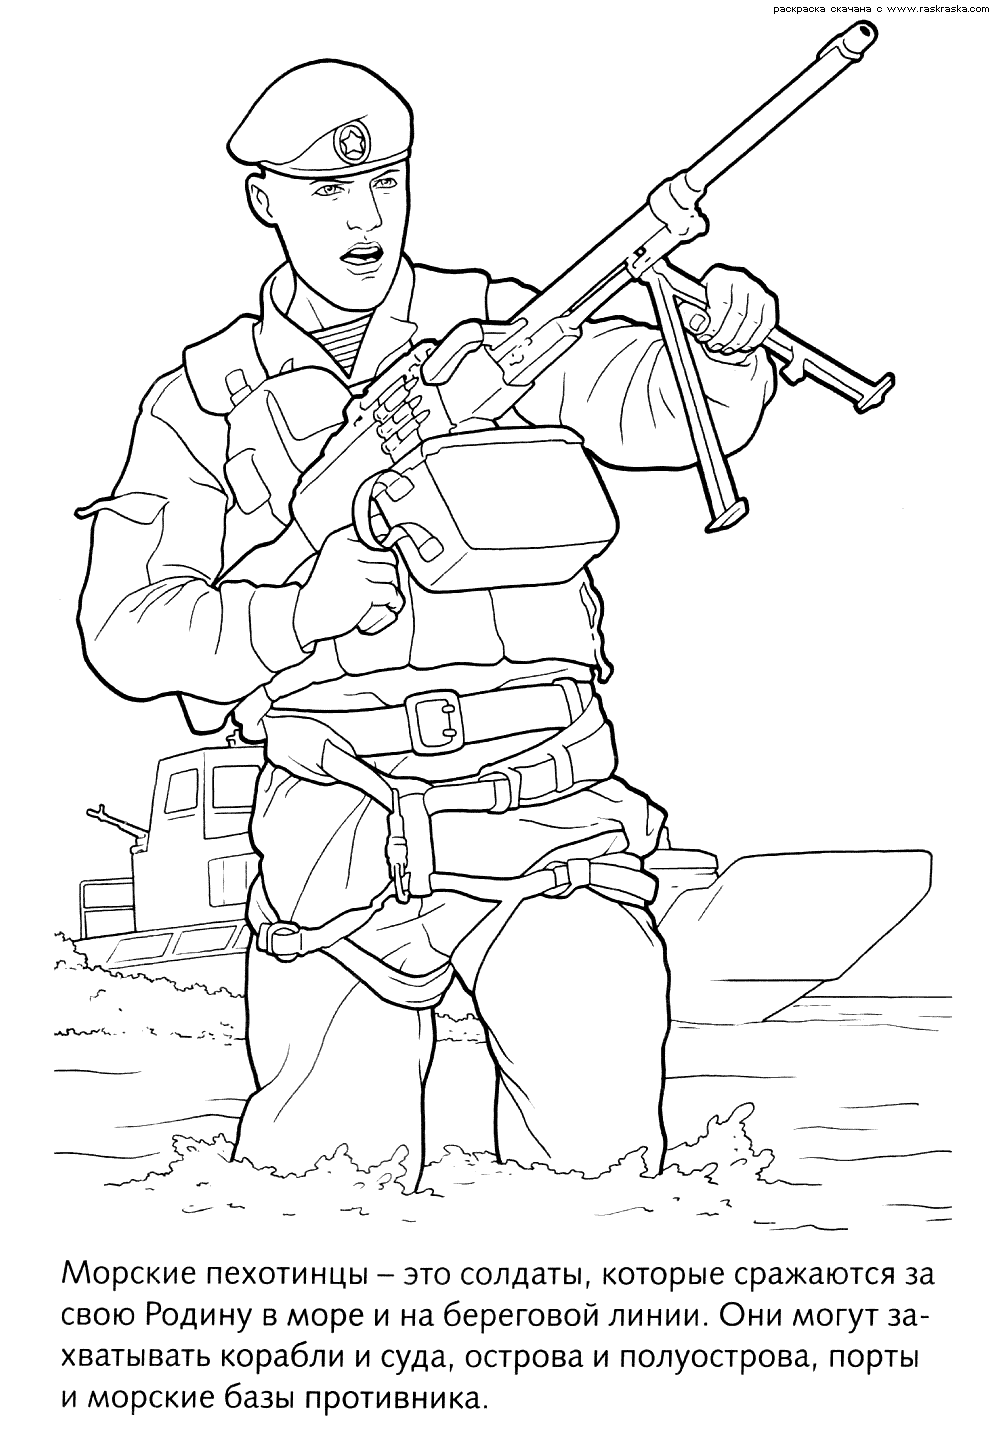 Нарисовать рисунок солдата карандашом